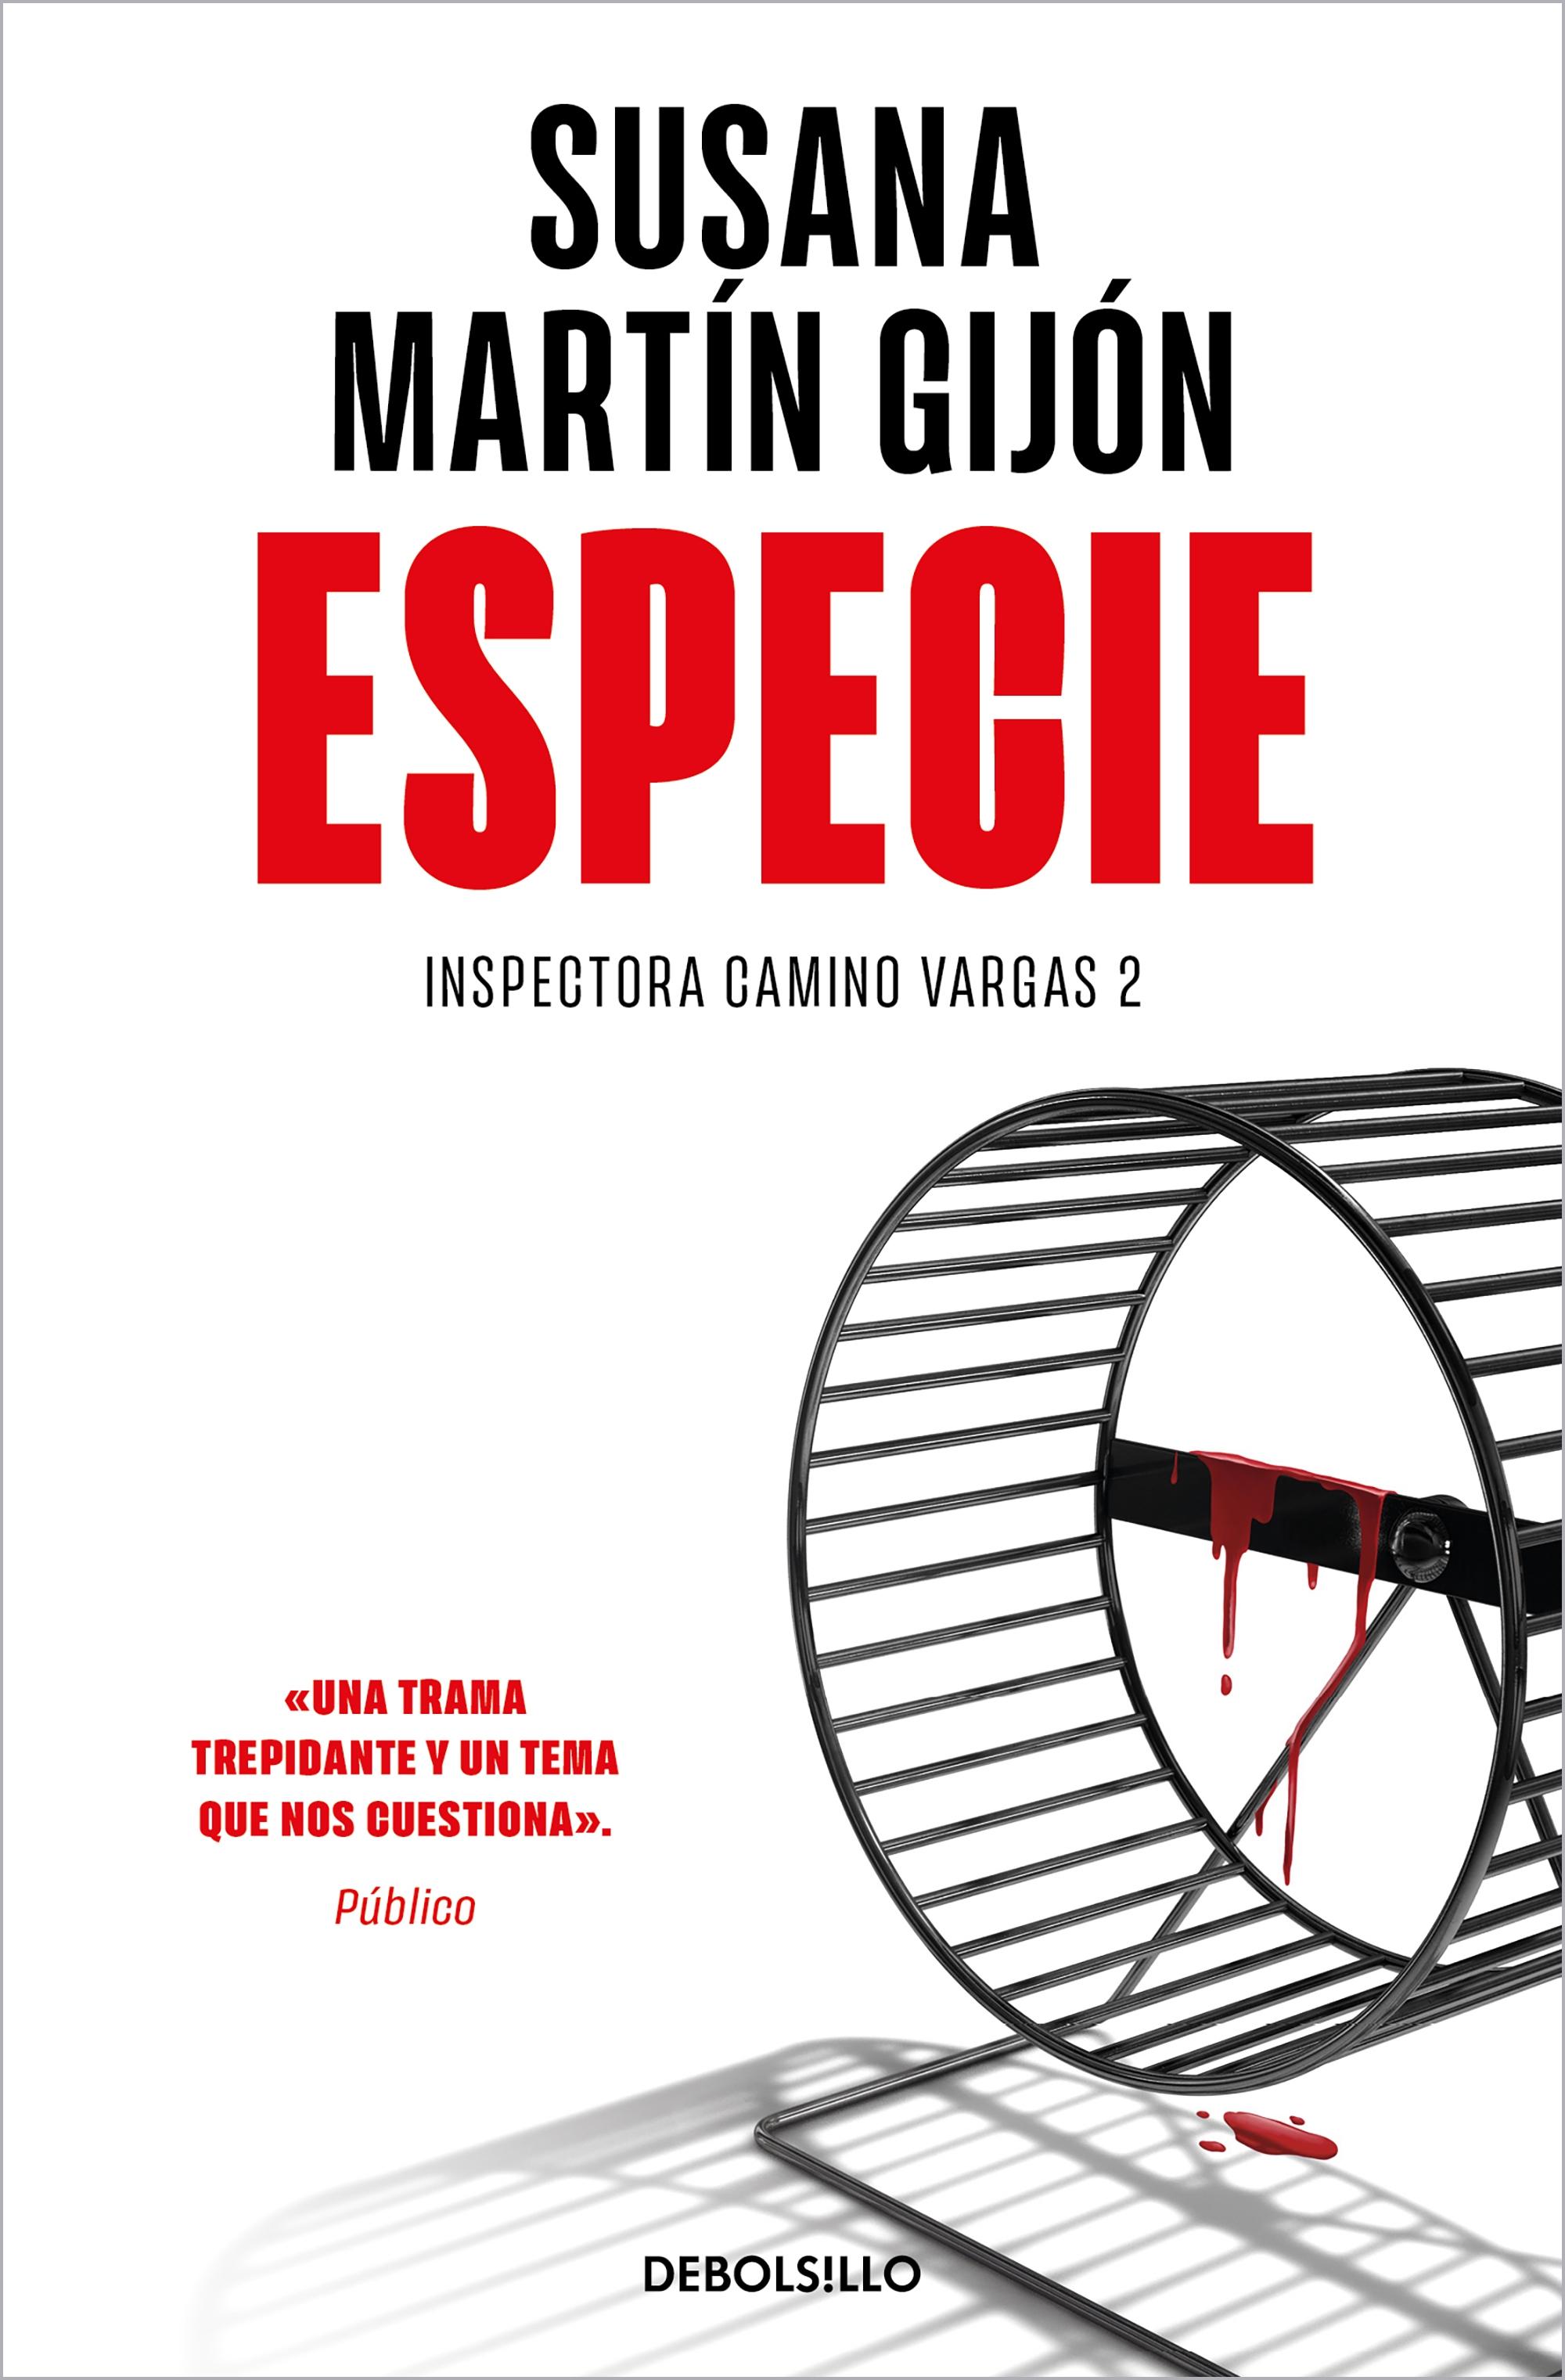 Especie (Inspectora Camino Vargas 2). 